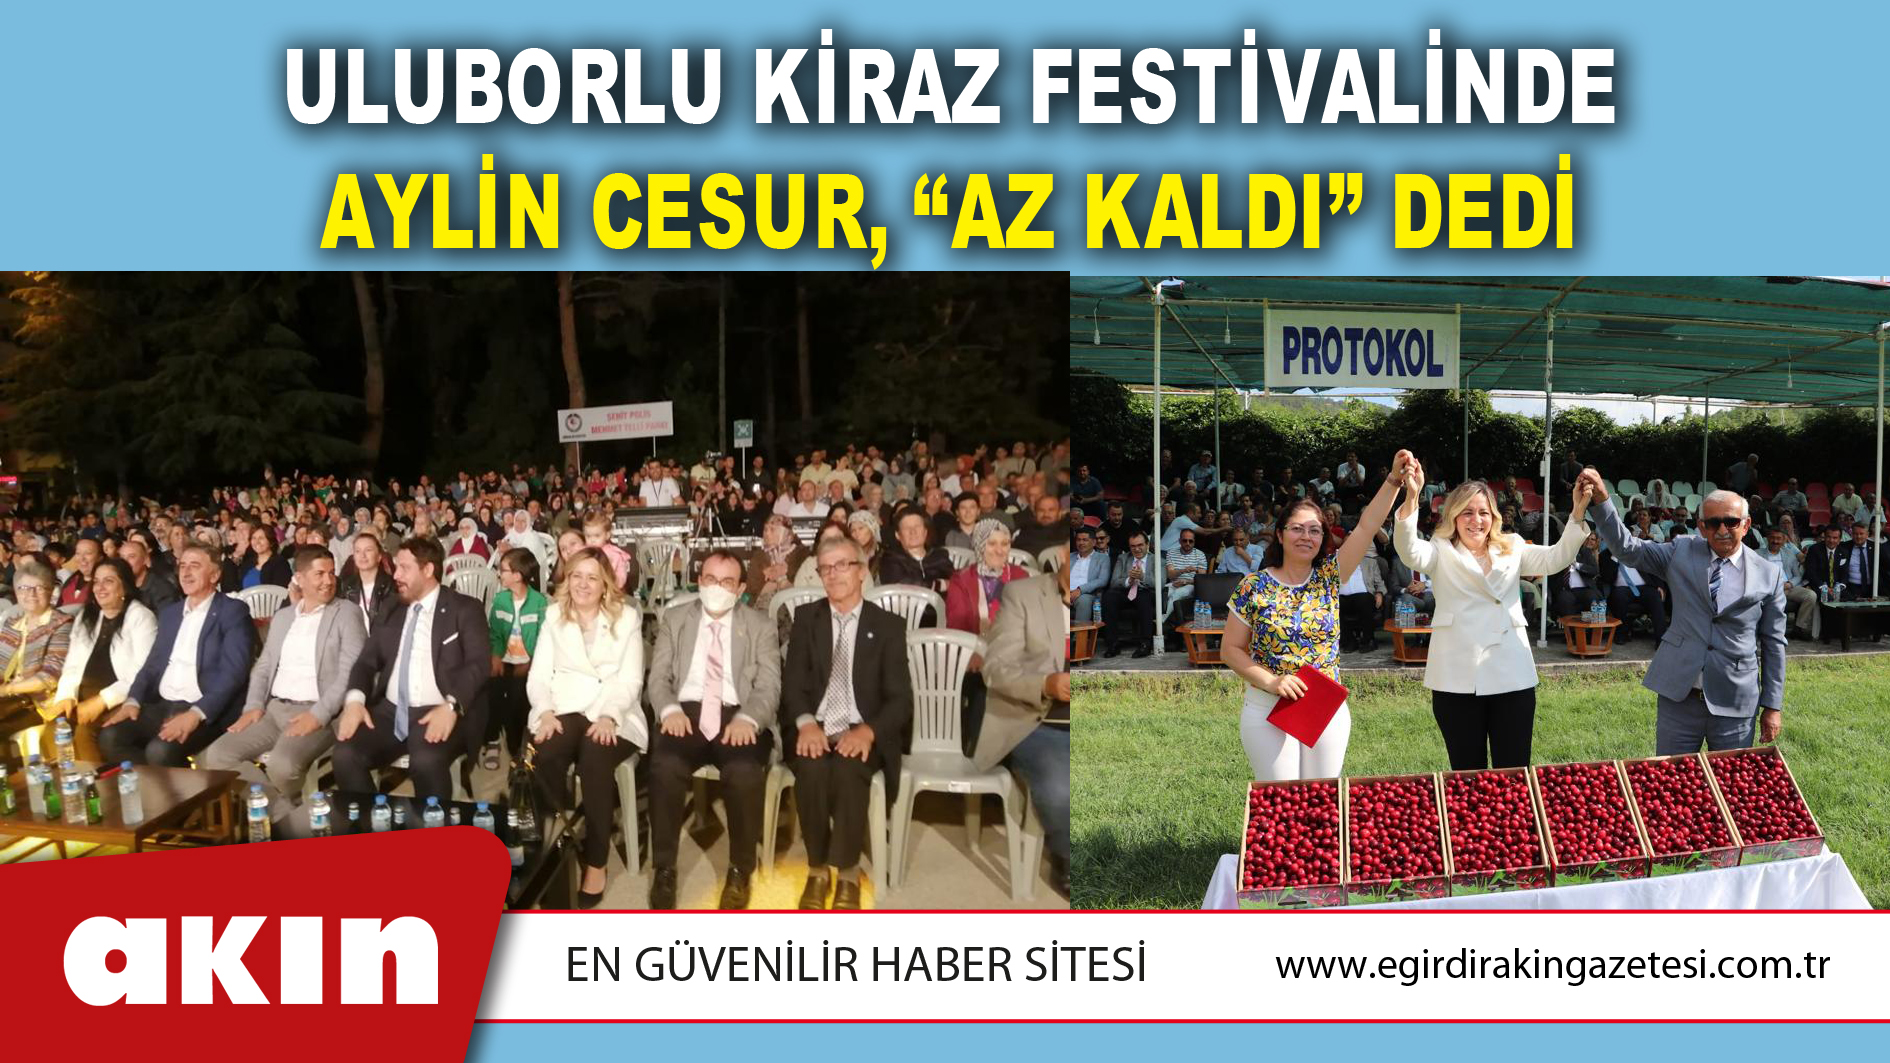 Uluborlu Kiraz Festivalinde Aylin Cesur, “Az Kaldı” Dedi